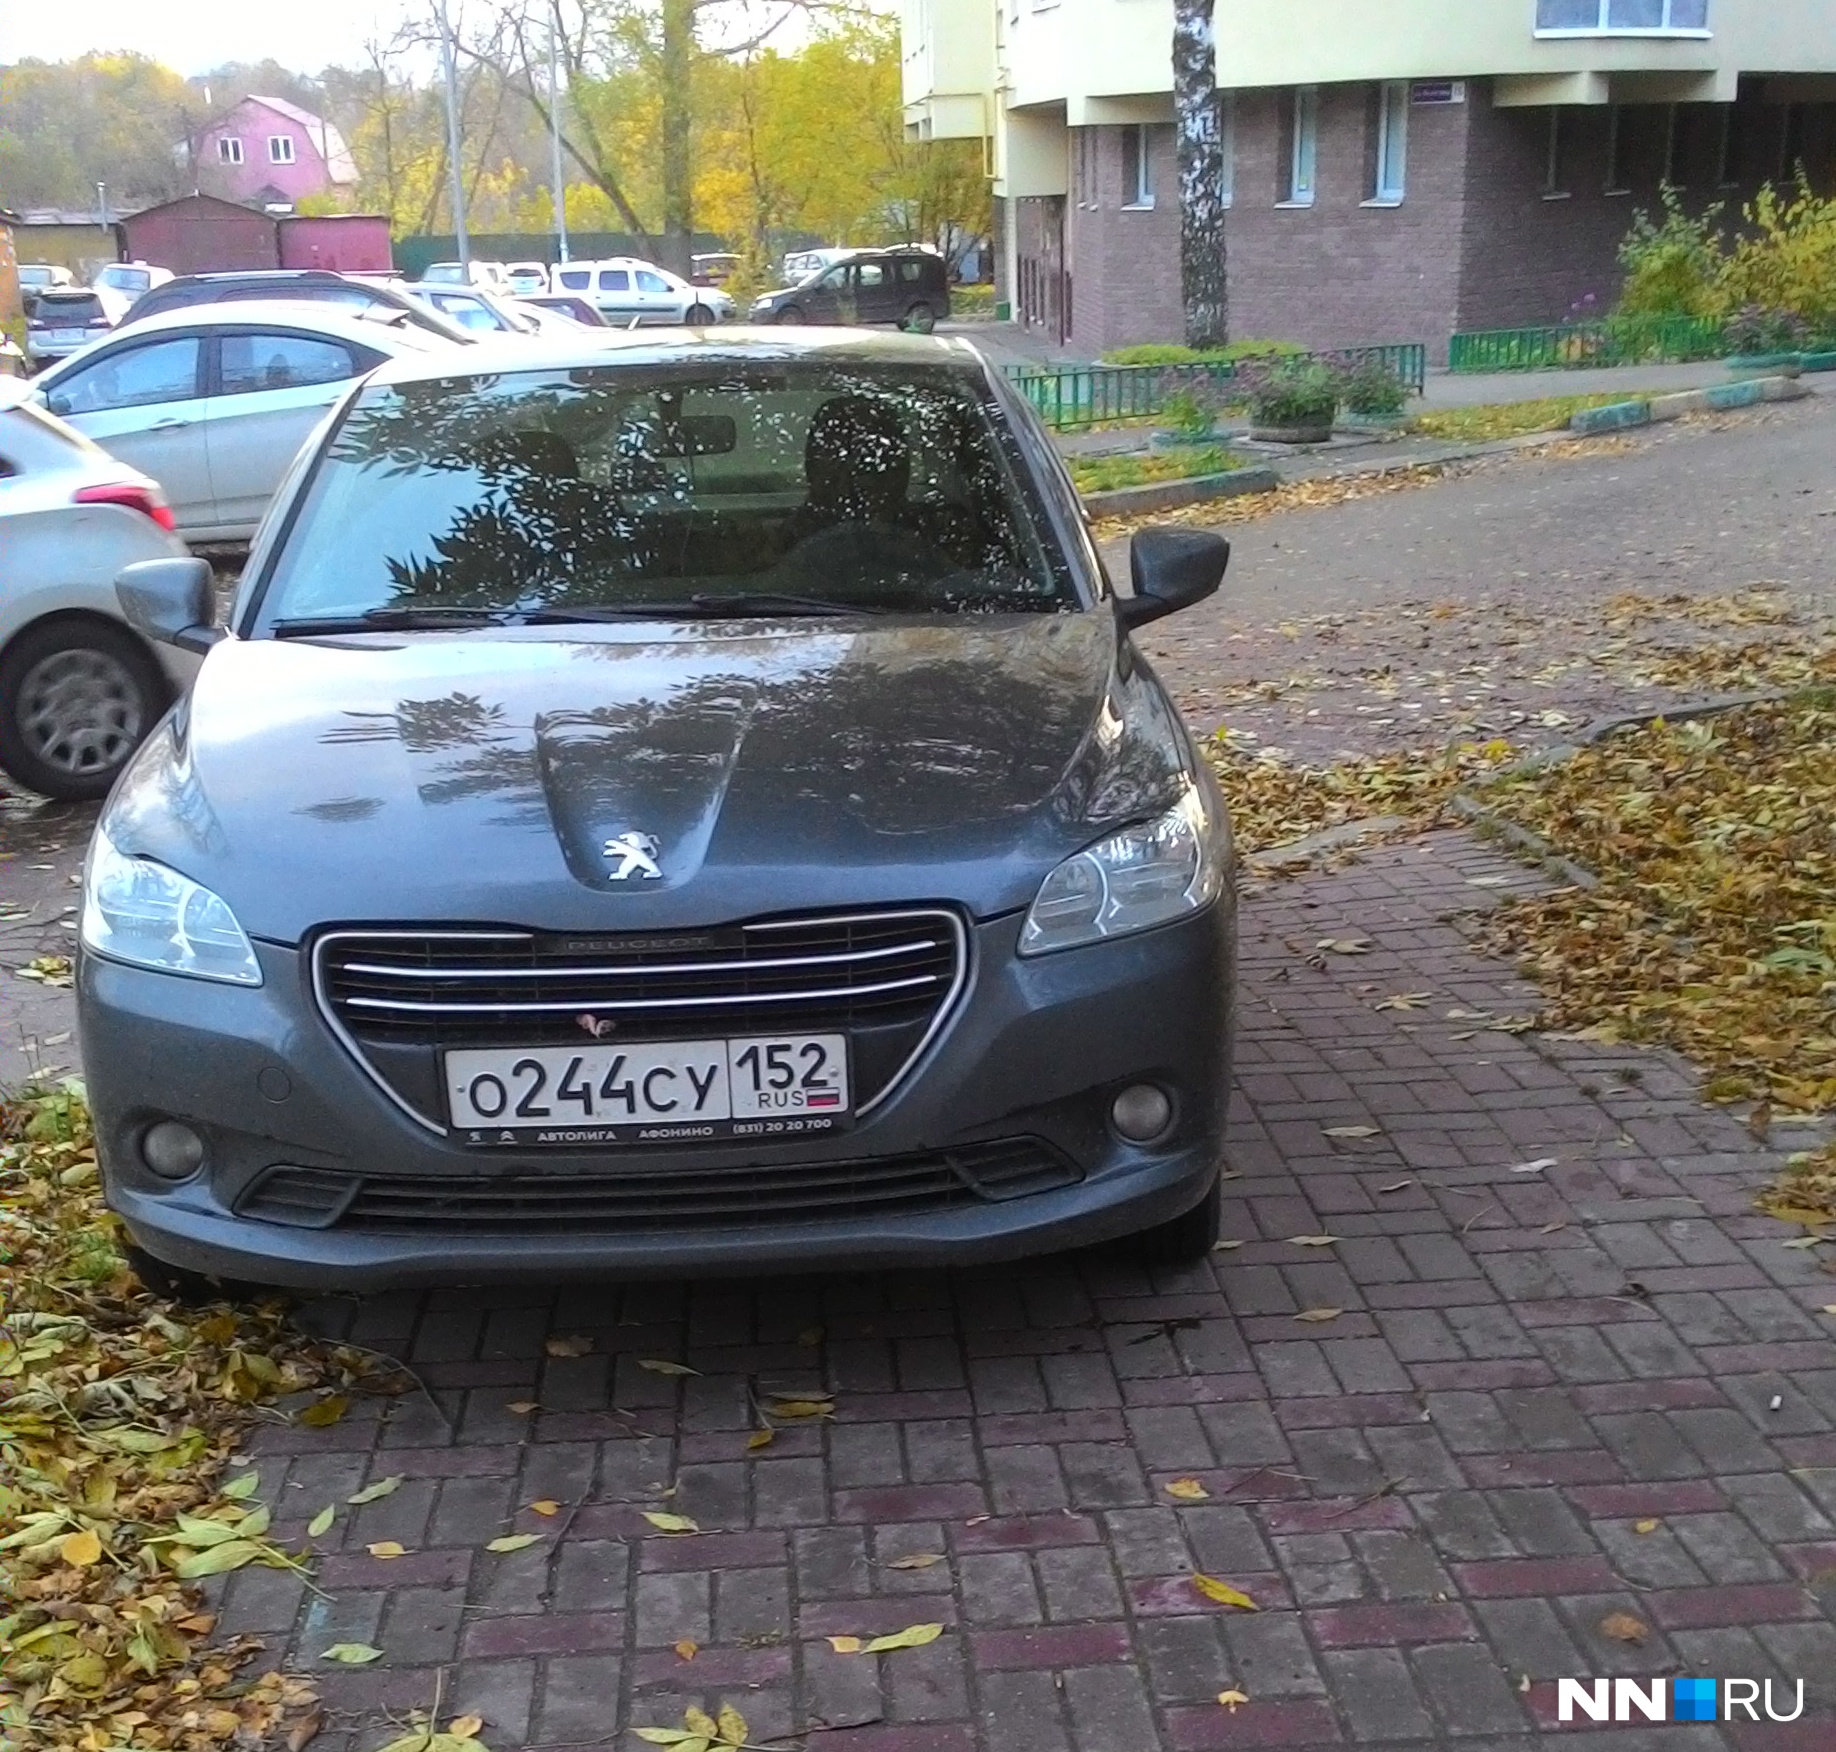 Короли парковки. Автомобилисты захватили тротуары в Нижнем Новгороде